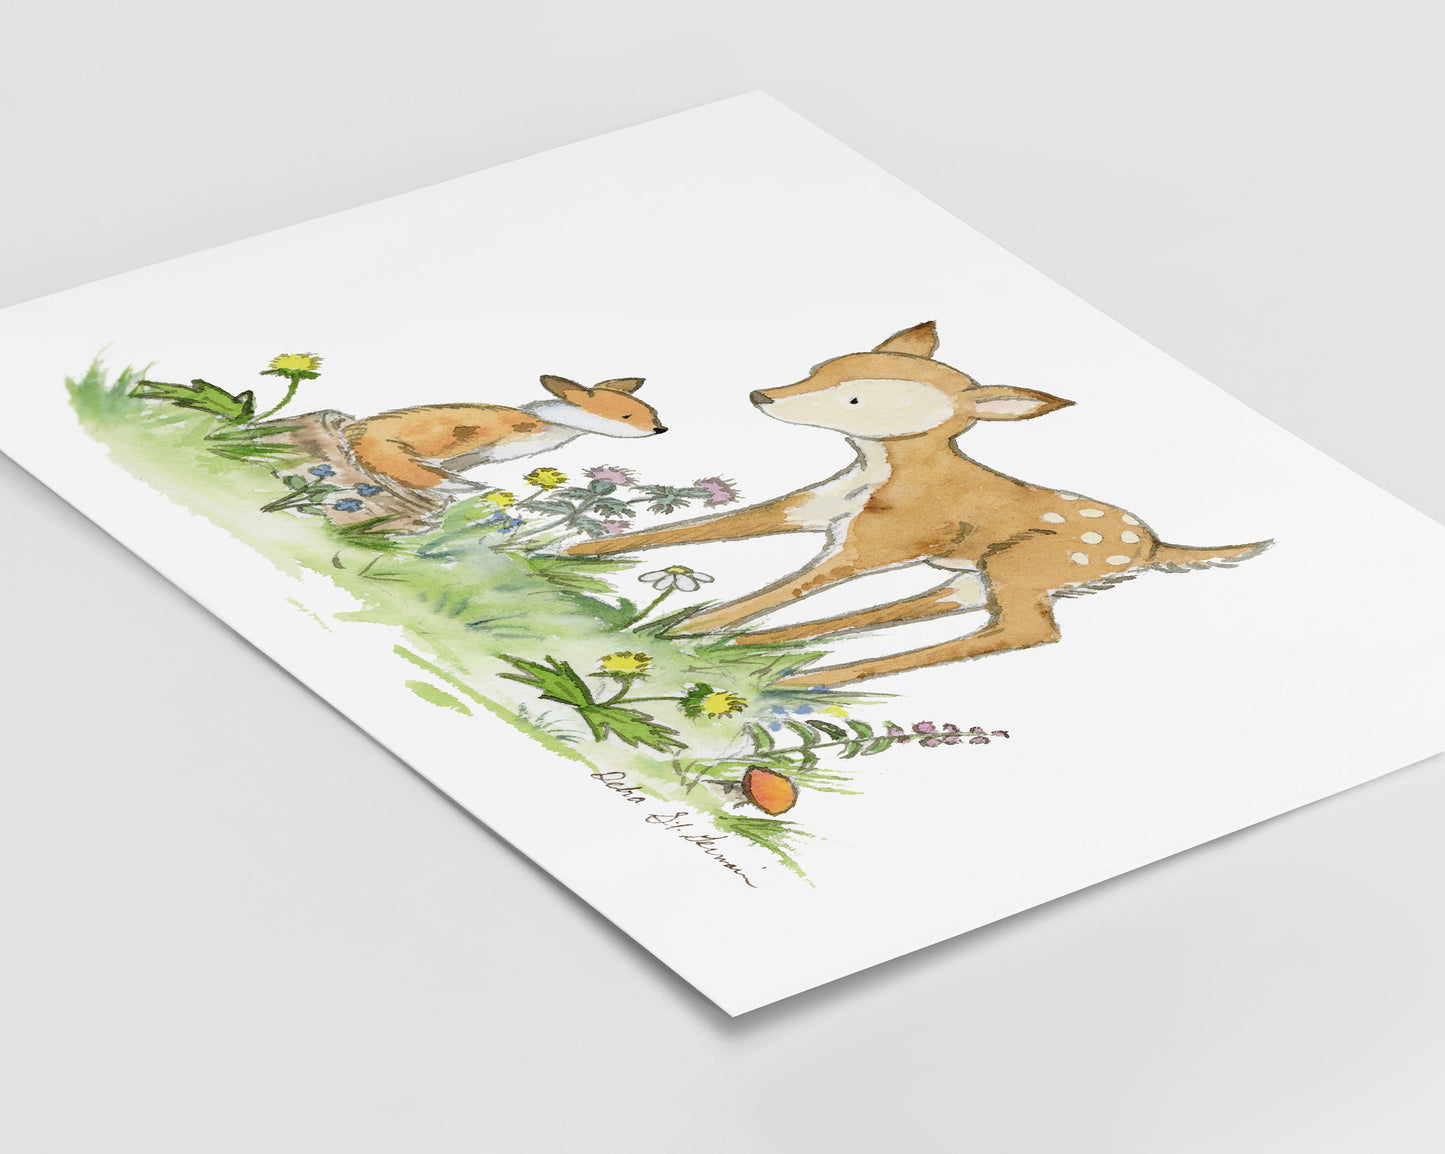 Woodland Nursery Art- Fawn and Fox Nursery Art- Children's Art- Woodland Art- Children's Wall Art- Forest Nursery Art- Nursery Print, Deer